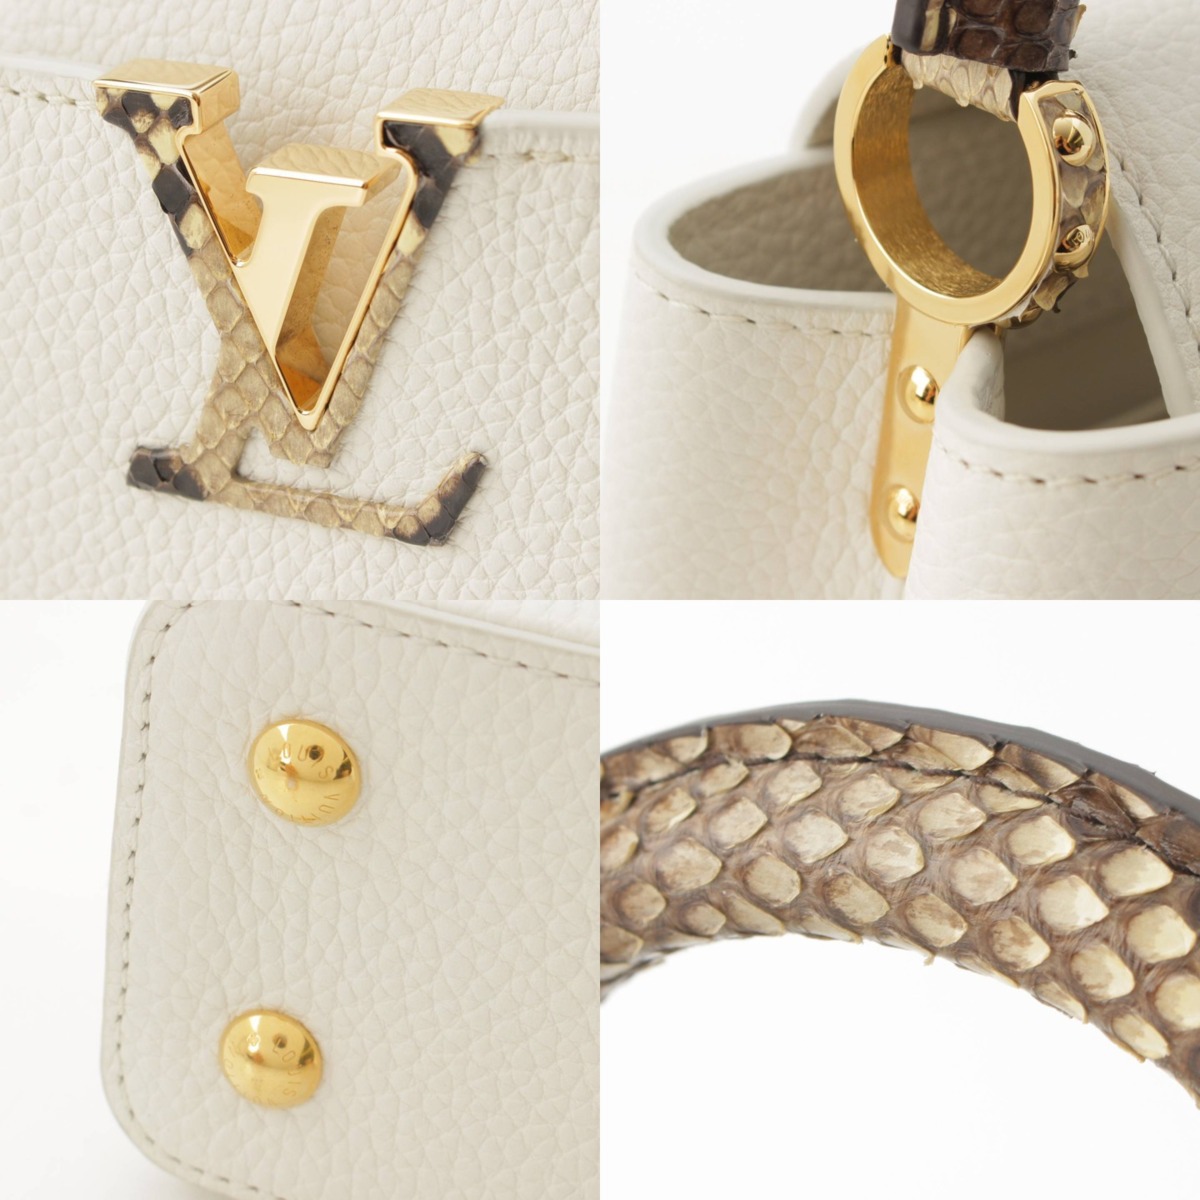 Louis Vuitton Capucines mini (N98477)